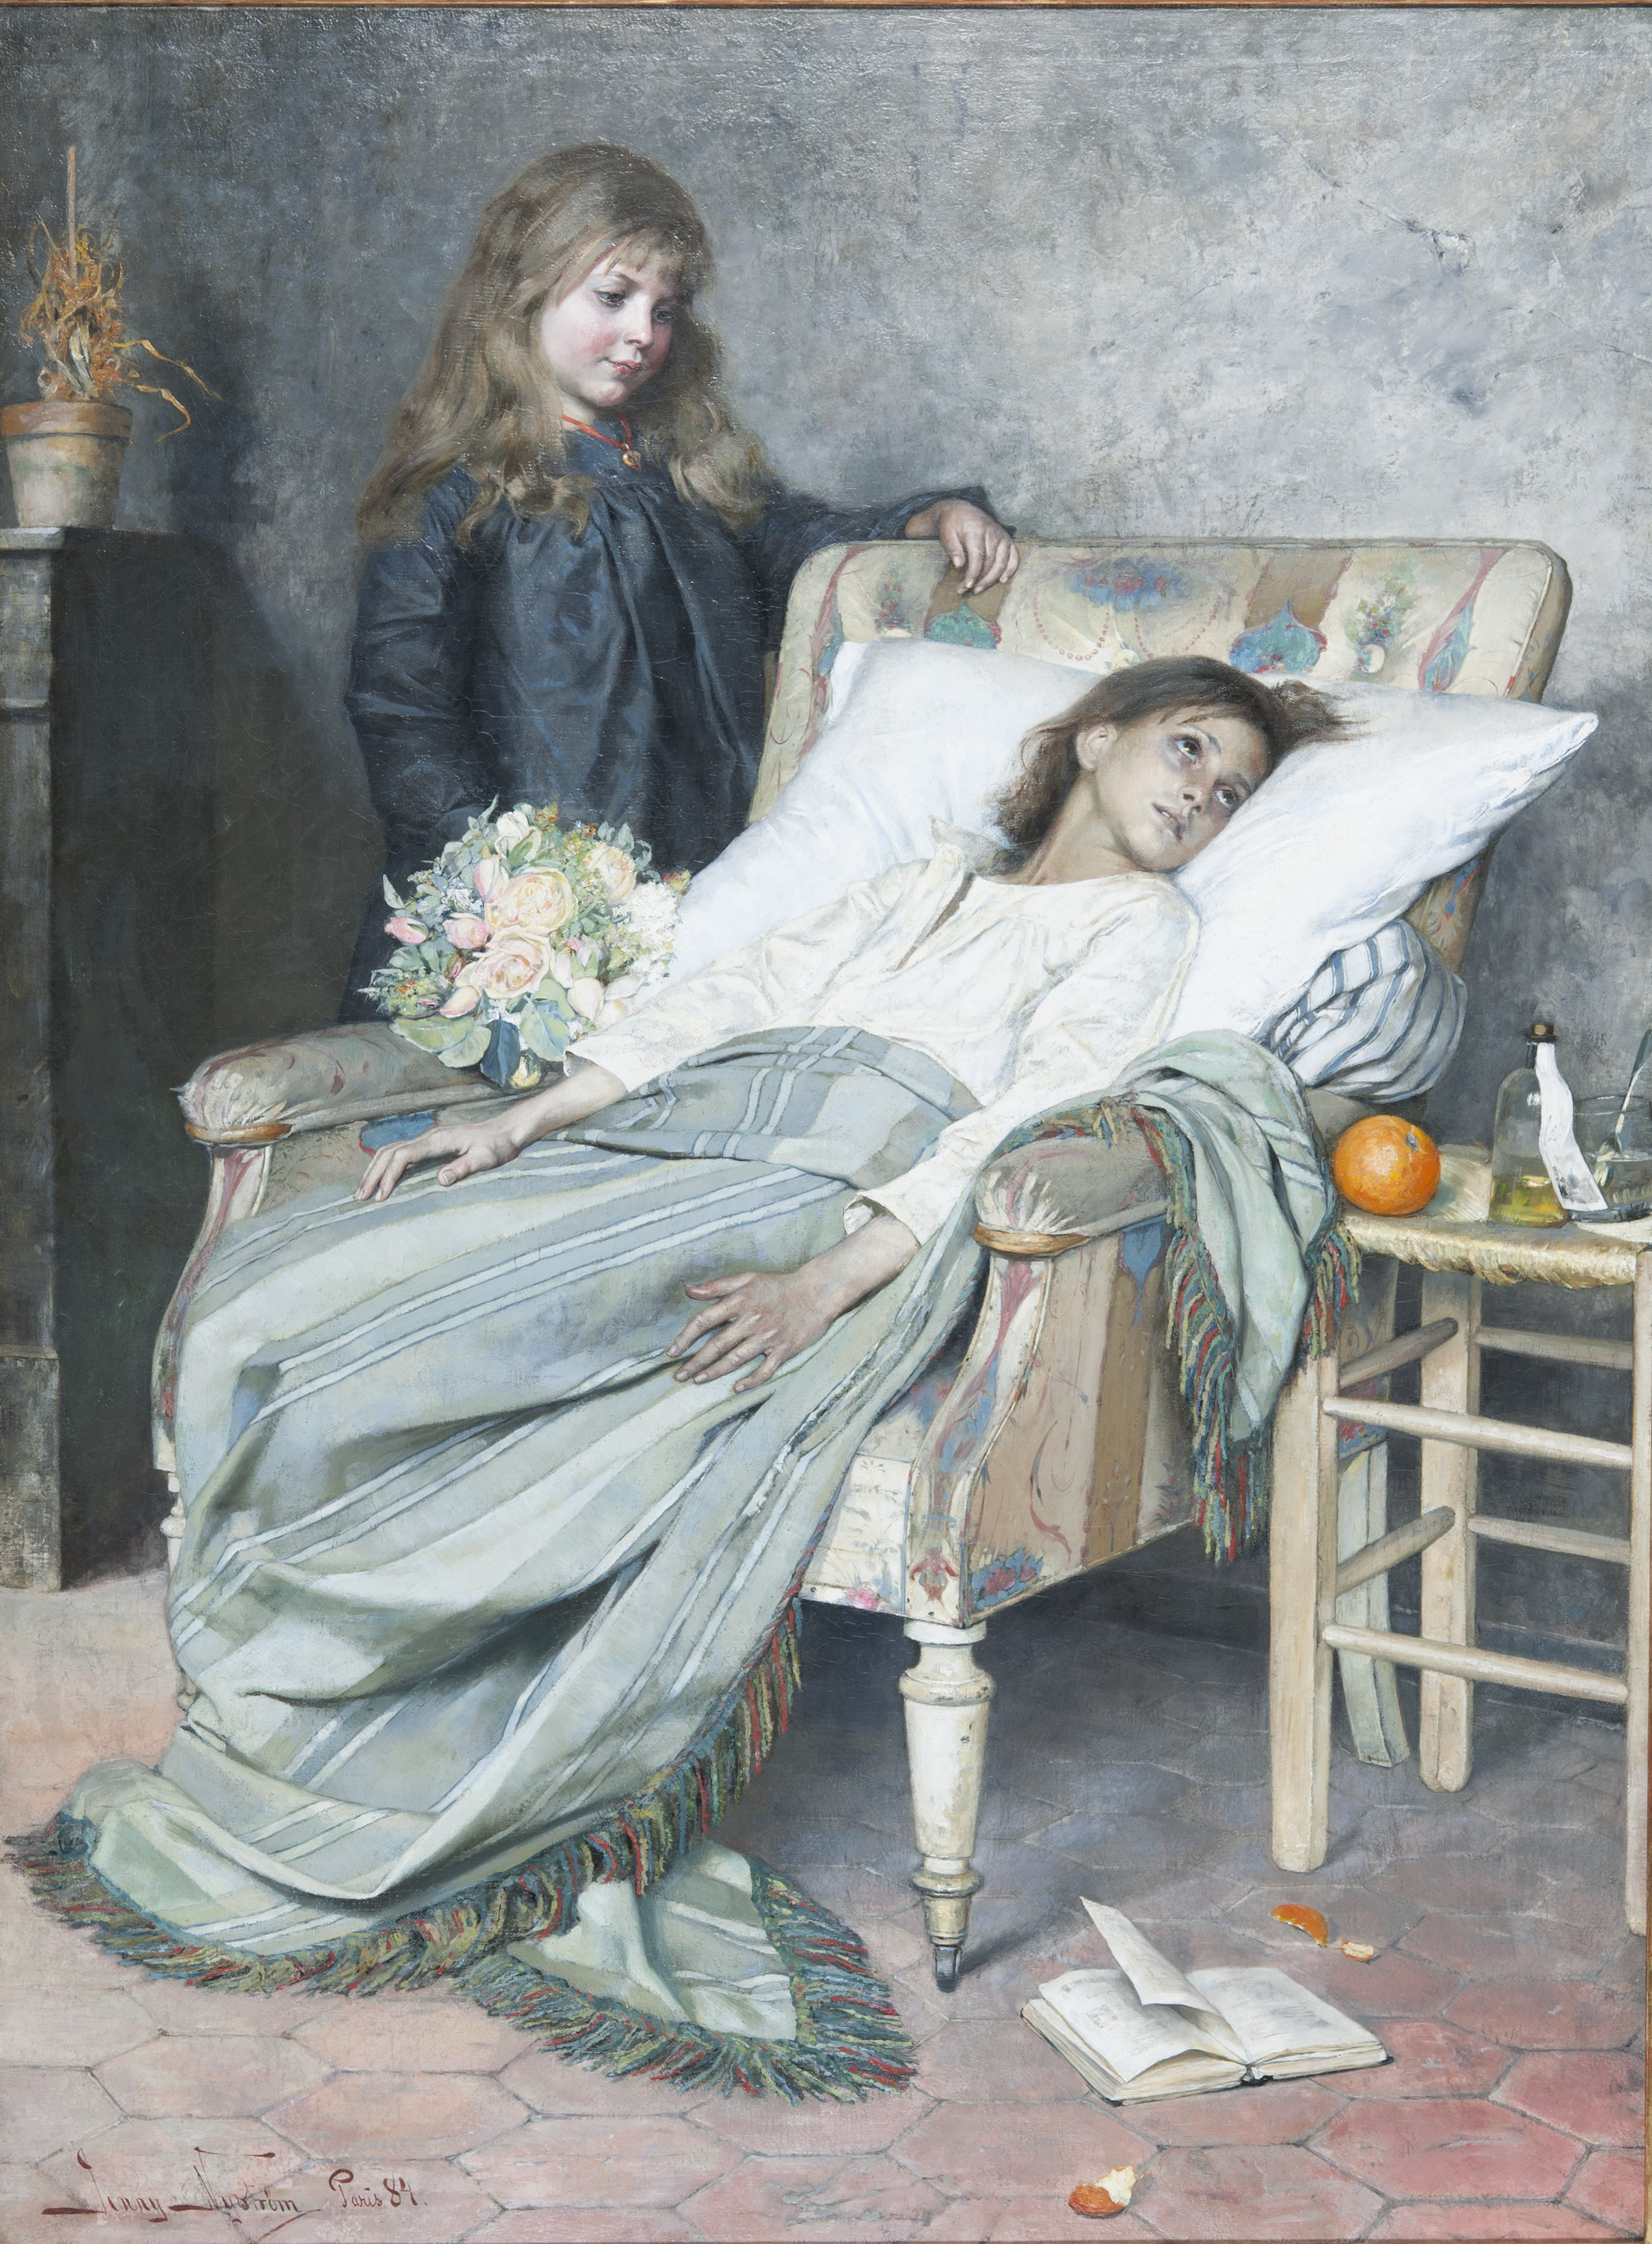 طور النقاهة by Jenny Nyström - 1884 م - 154 x 115 cm 